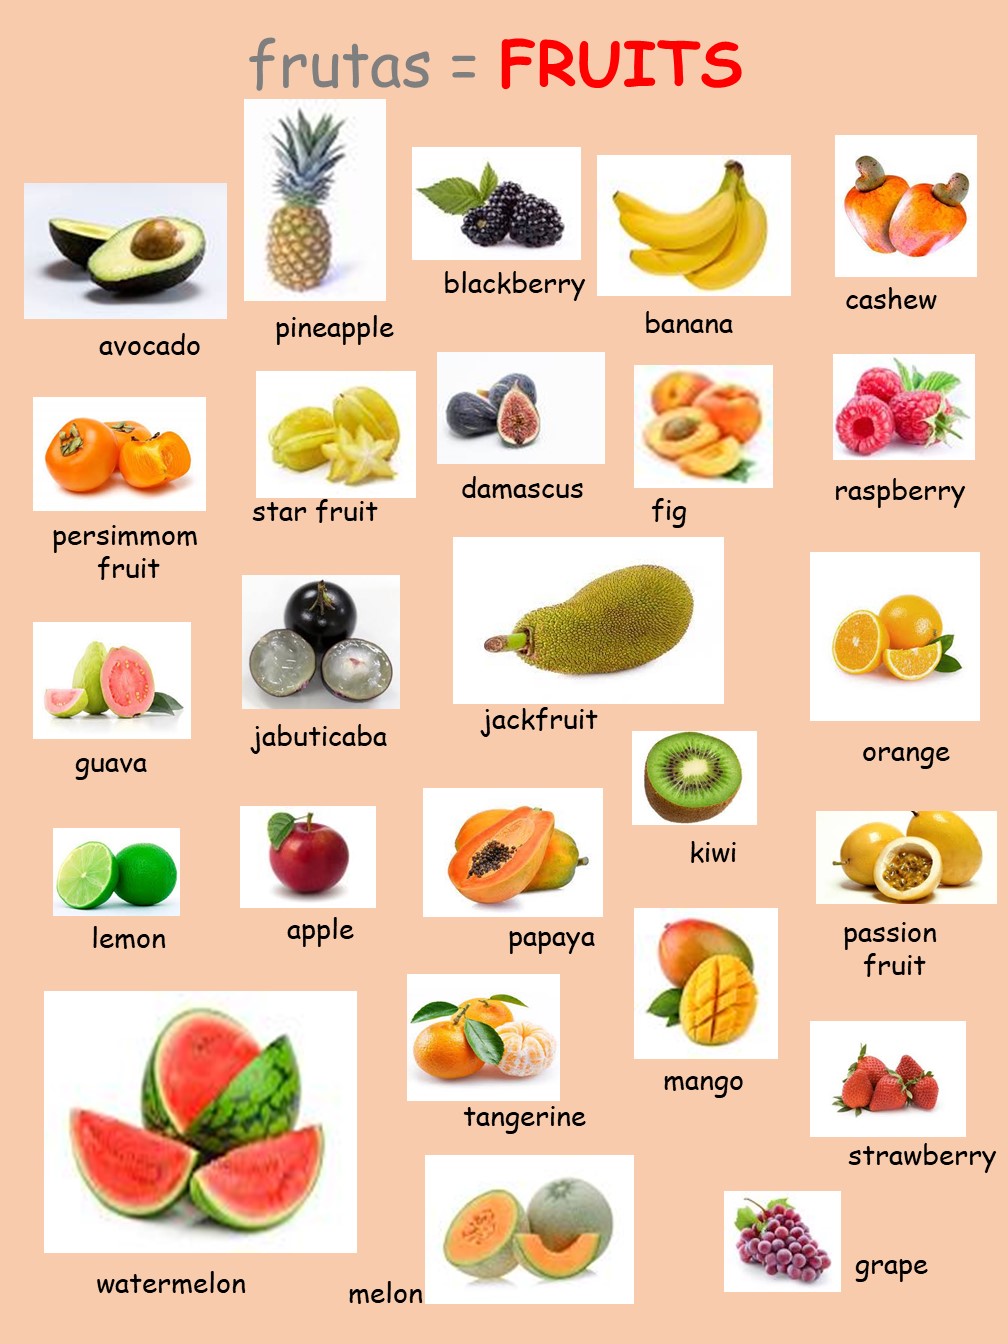 Frutas em inglês: lista com 60 frutas, pronúncias e exemplos